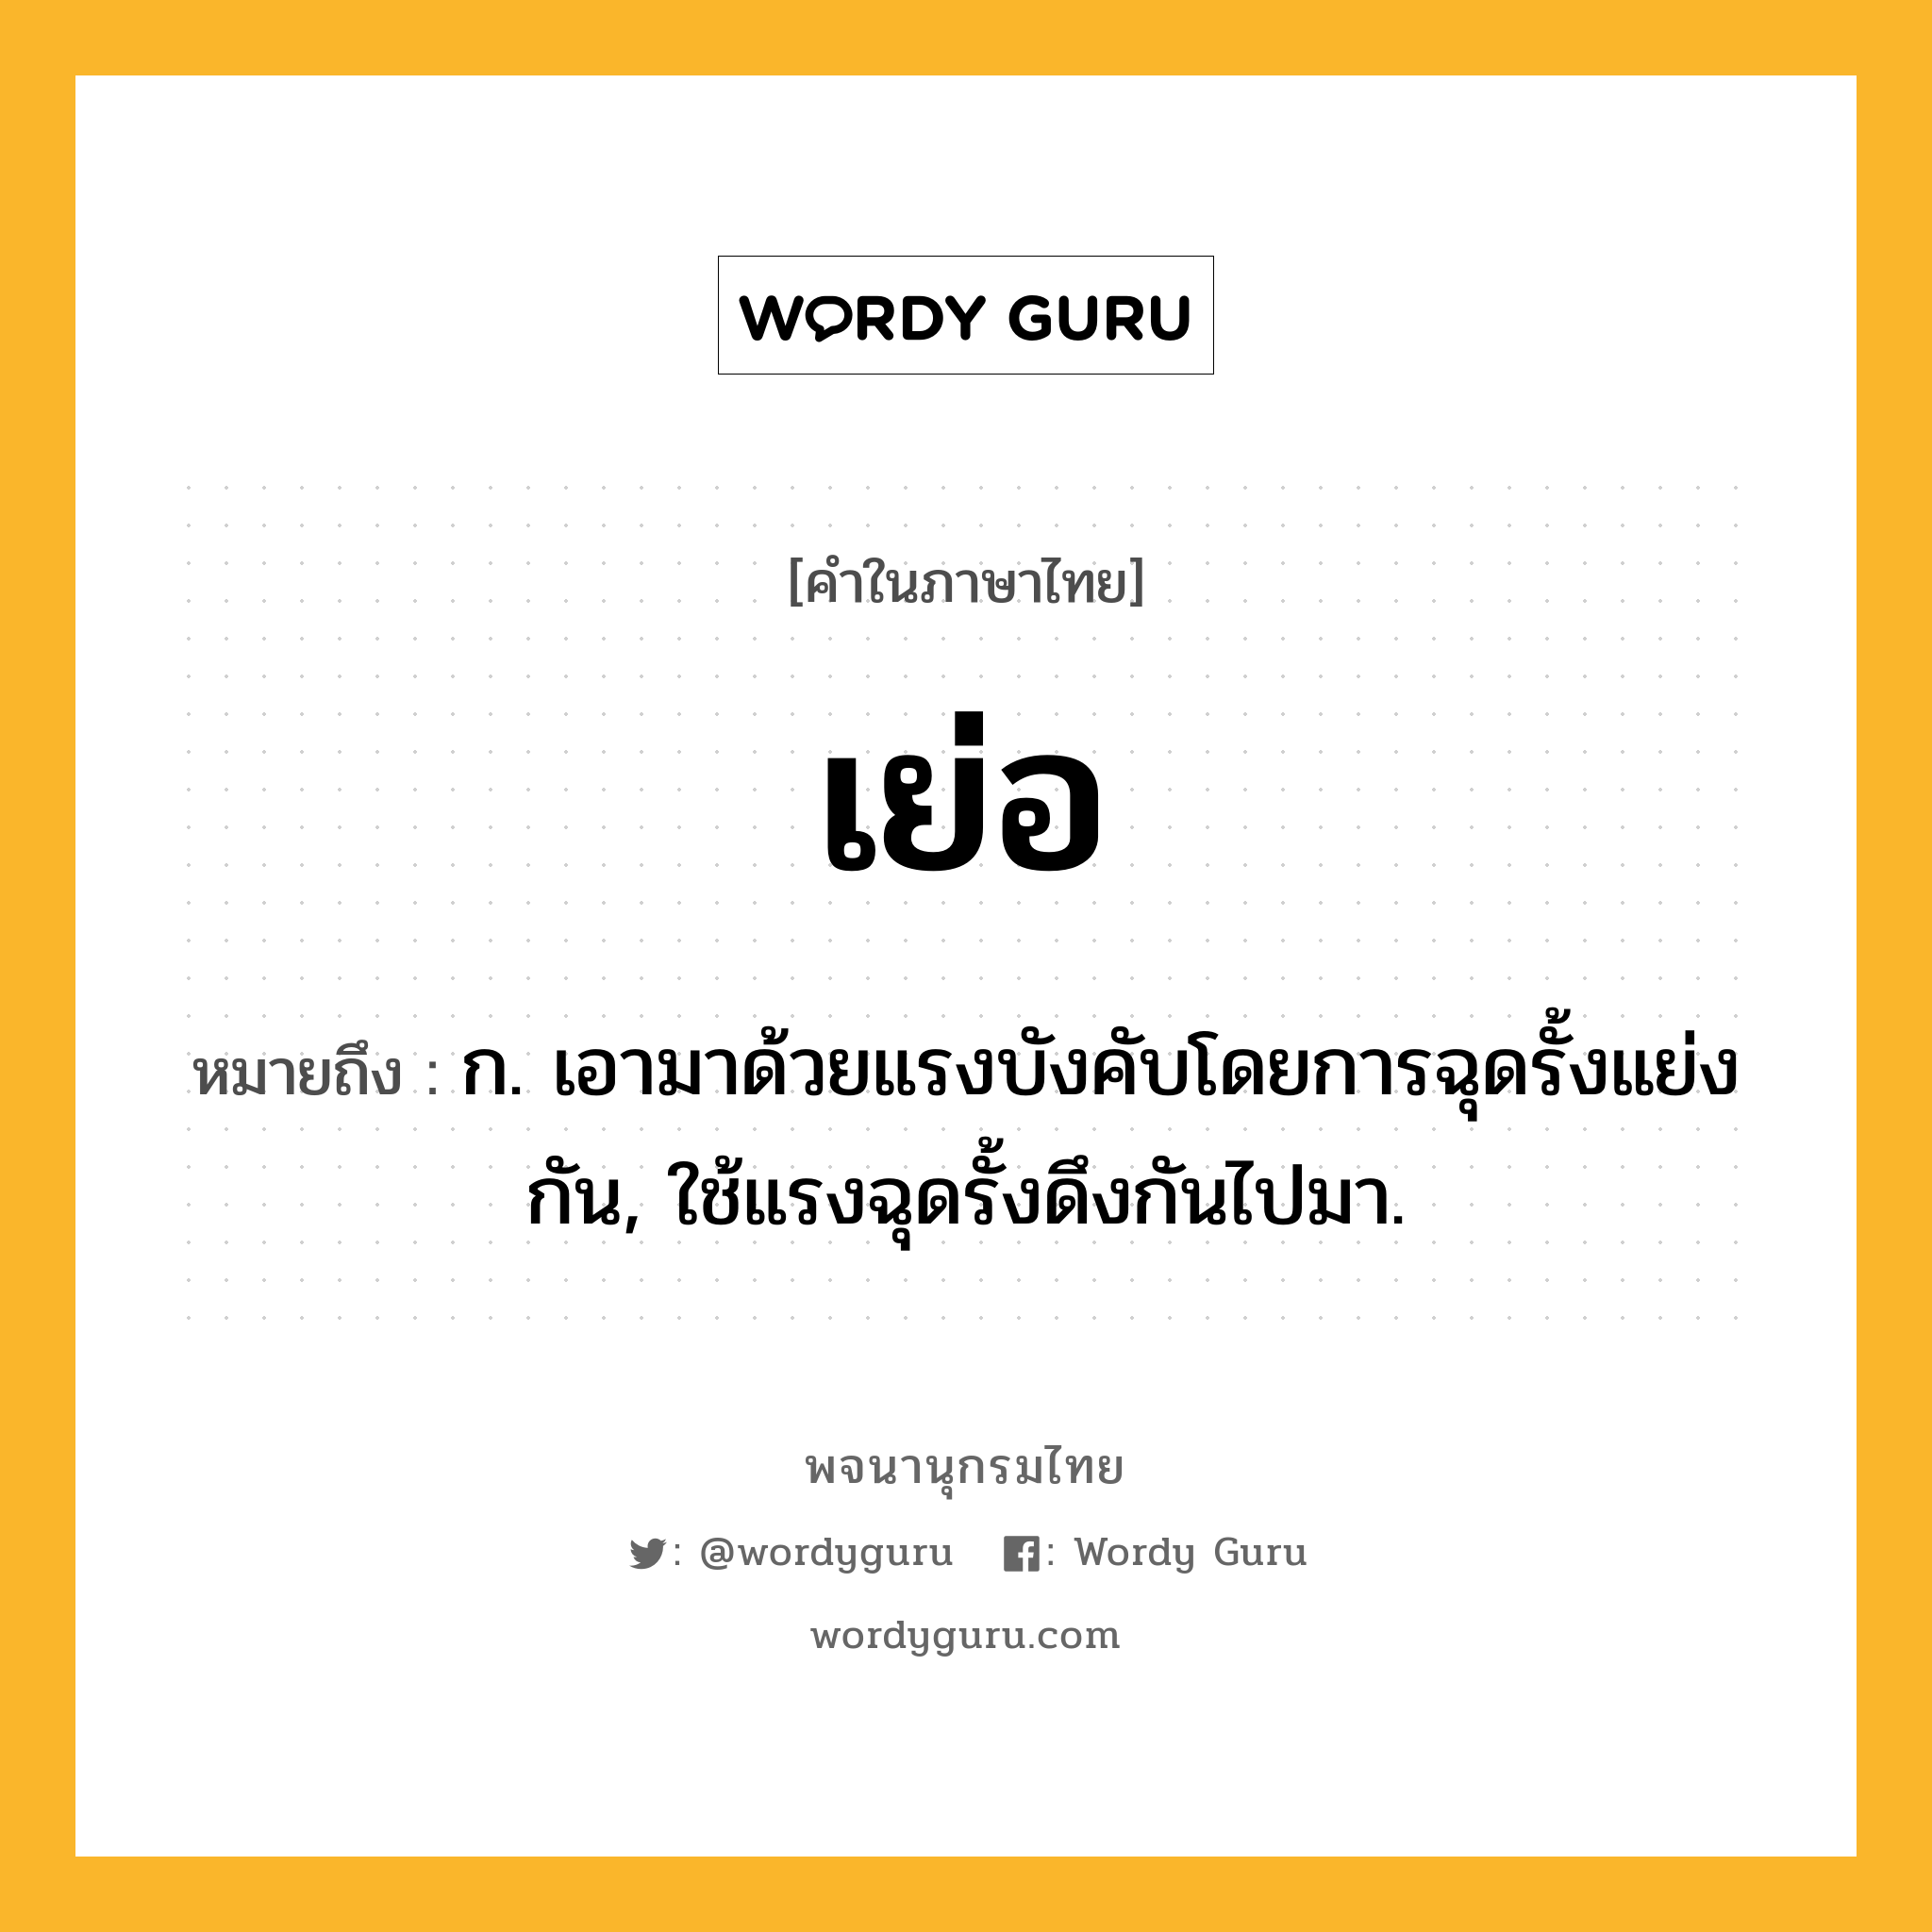 เย่อ ความหมาย หมายถึงอะไร?, คำในภาษาไทย เย่อ หมายถึง ก. เอามาด้วยแรงบังคับโดยการฉุดรั้งแย่งกัน, ใช้แรงฉุดรั้งดึงกันไปมา.